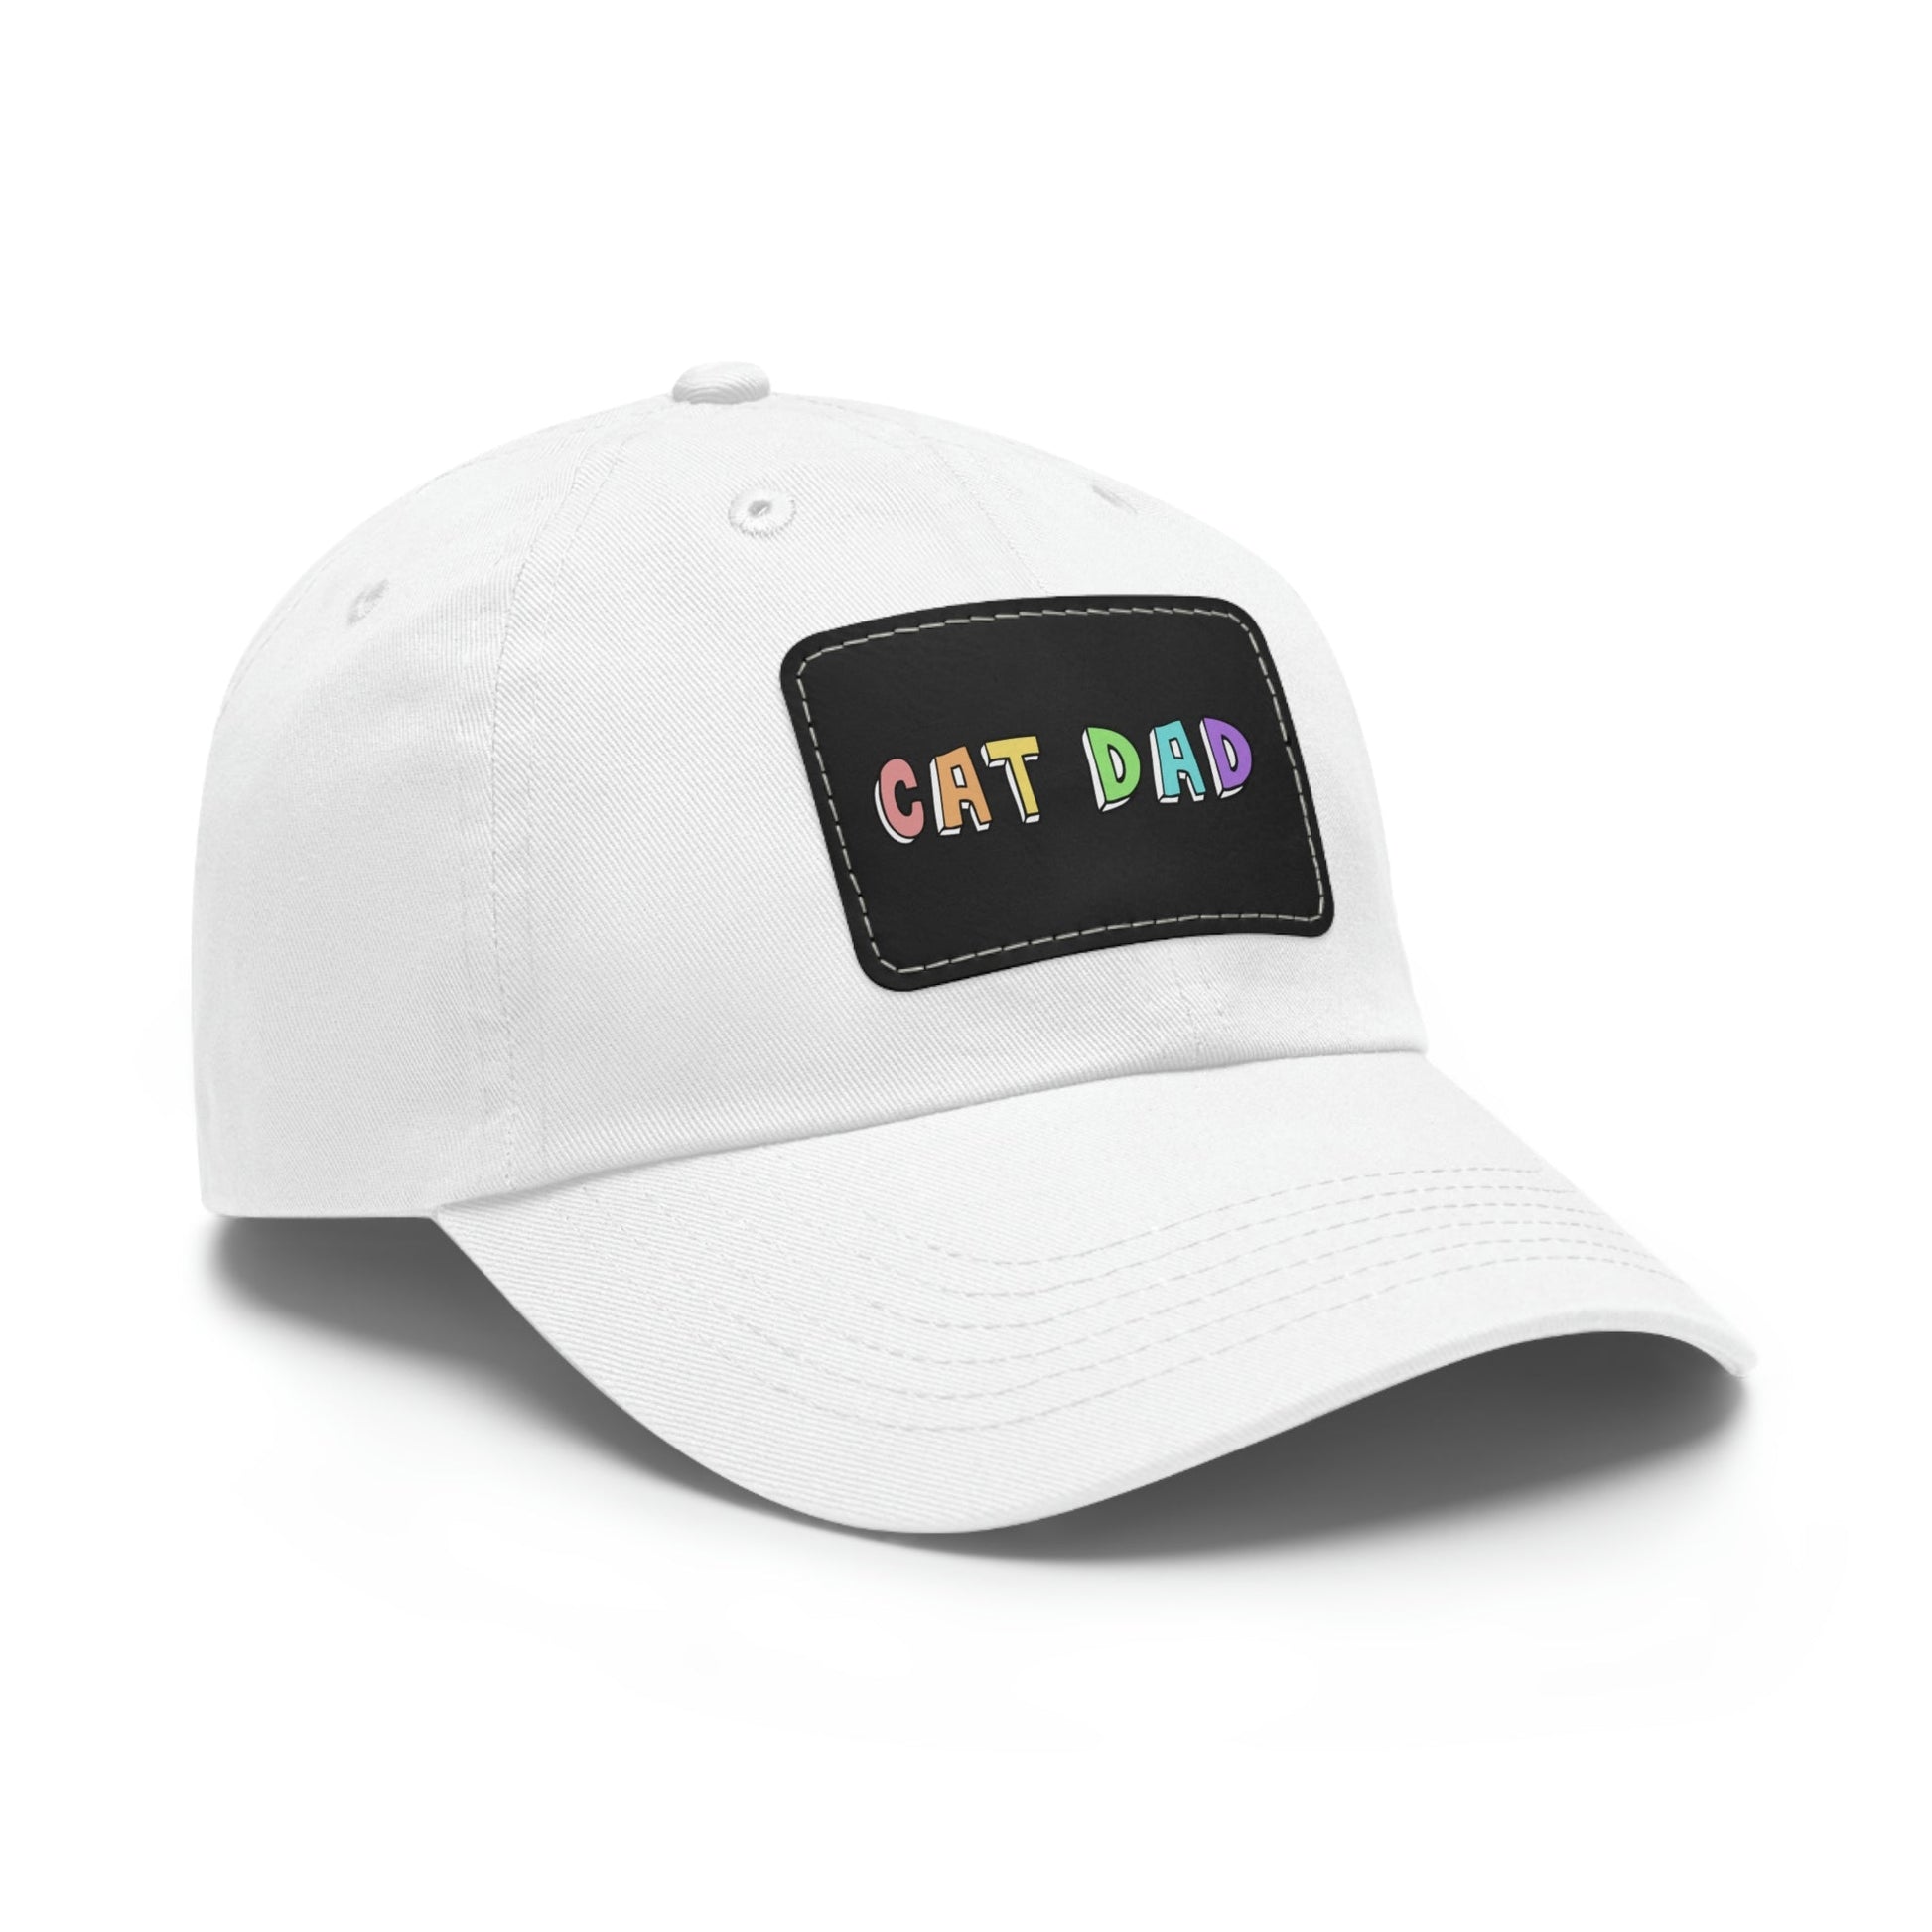 Cat Dad | Dad Hat - Detezi Designs-28652161435636730130